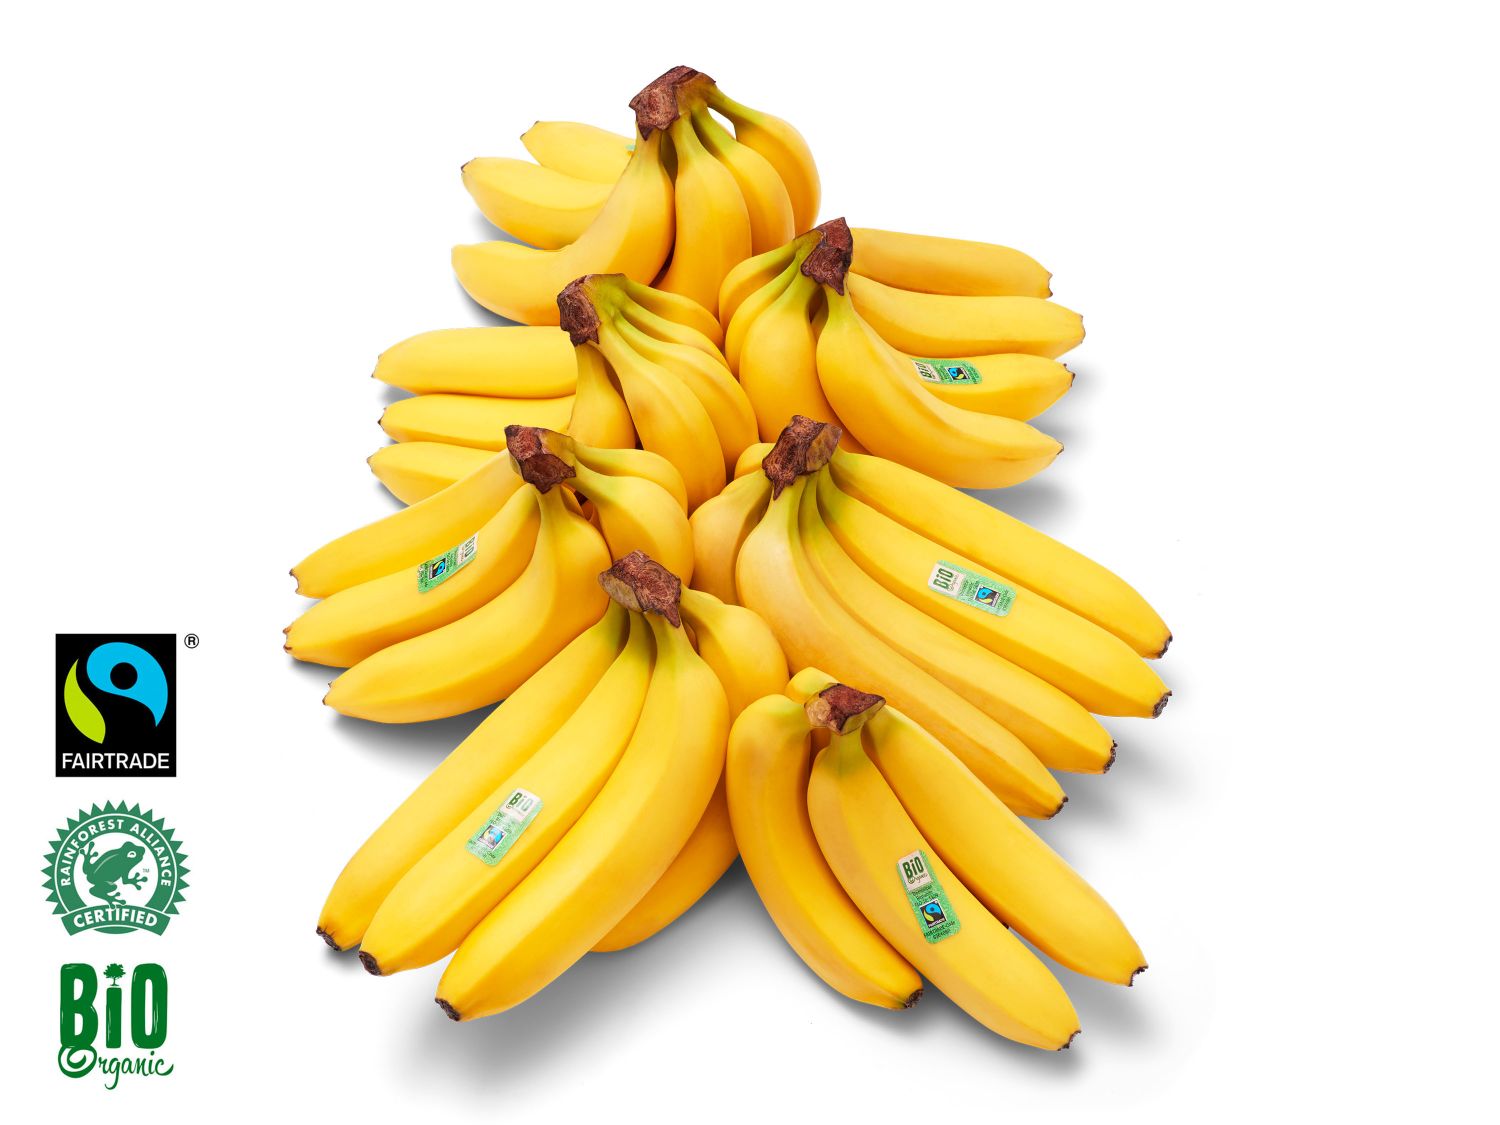 Fairtrade biologische bananen - Lidl